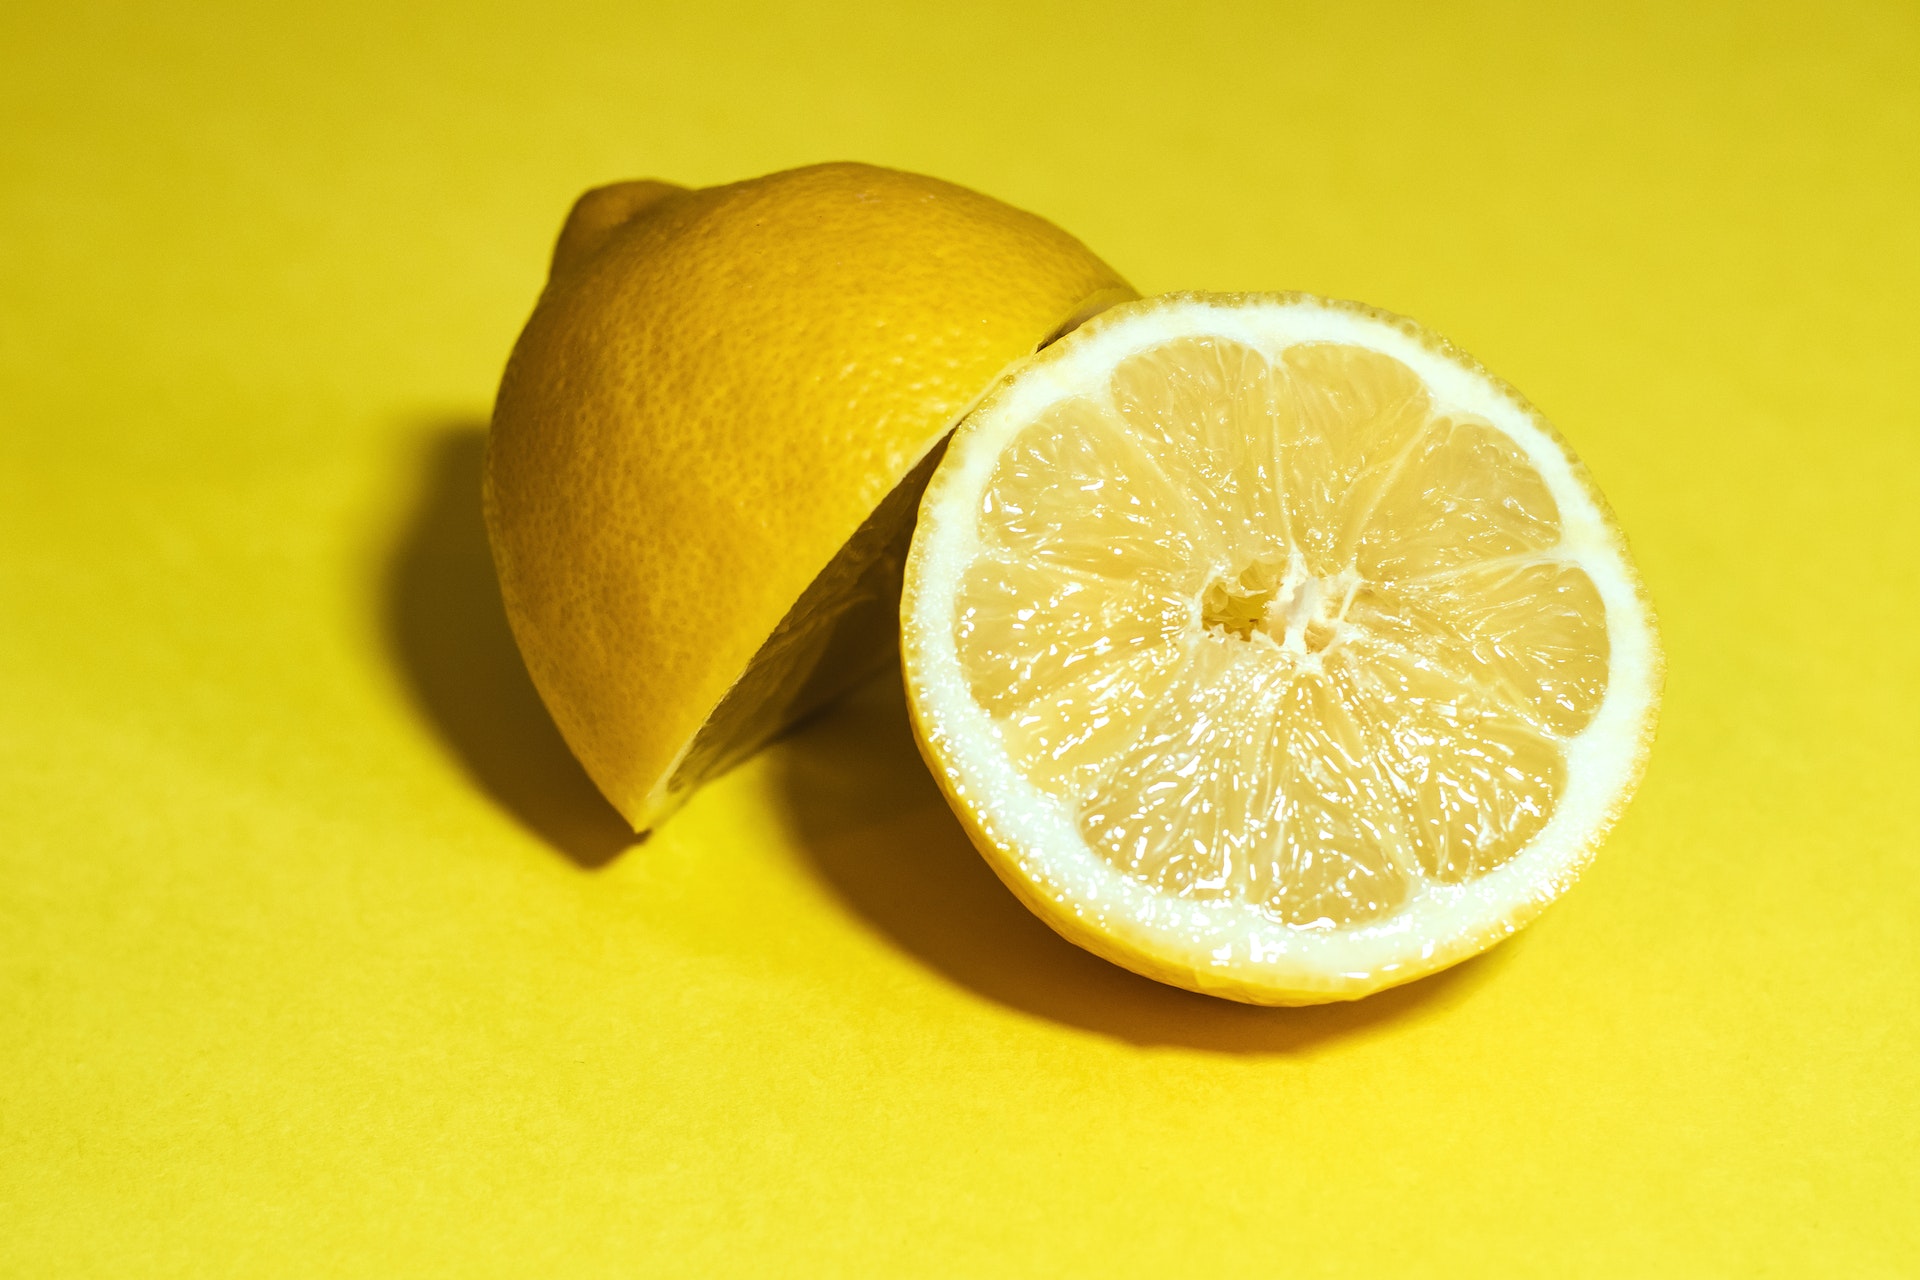 Lemon cut in half